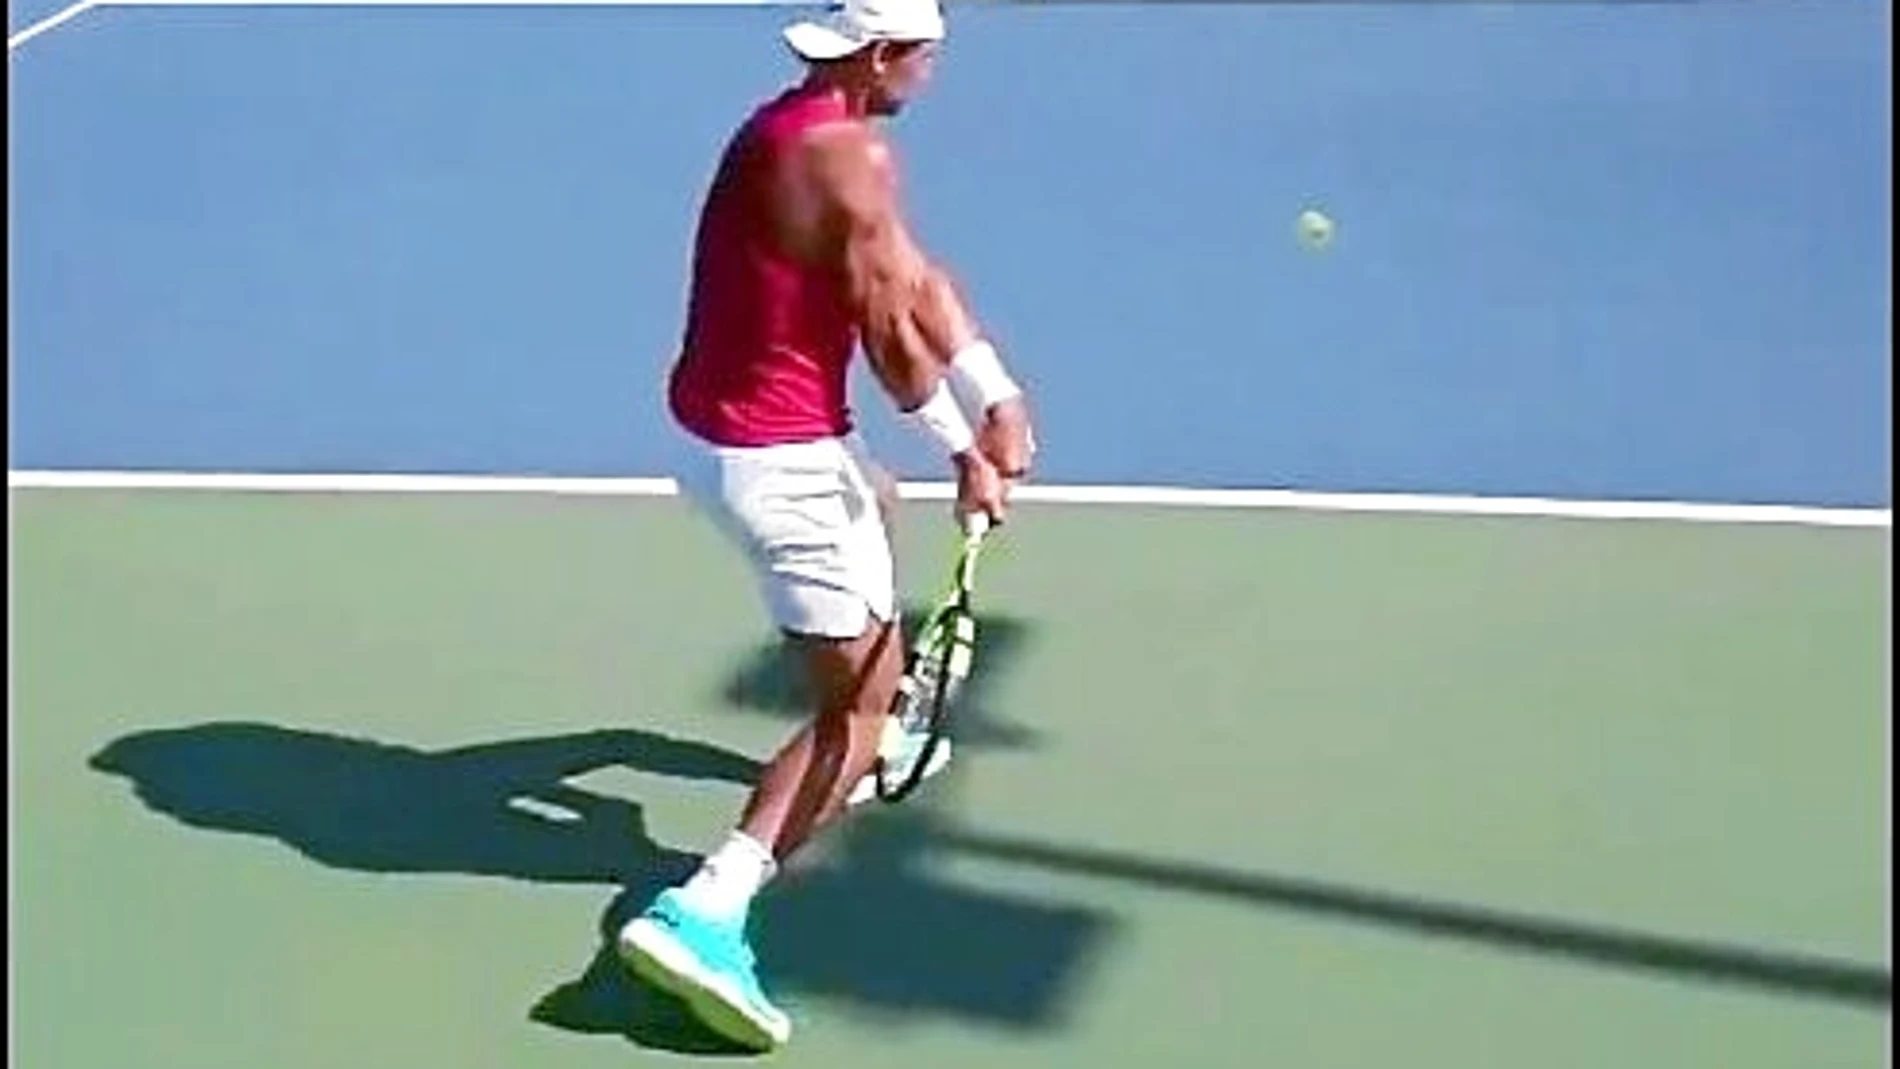 Rafa Nadal estuvo entrenando ayer en su academia en Manacor con Andy Murray, número dos del mundo y reciente ganador de Wimbledon. El martes también lo iban a hacer, pero el español anuló la sesión